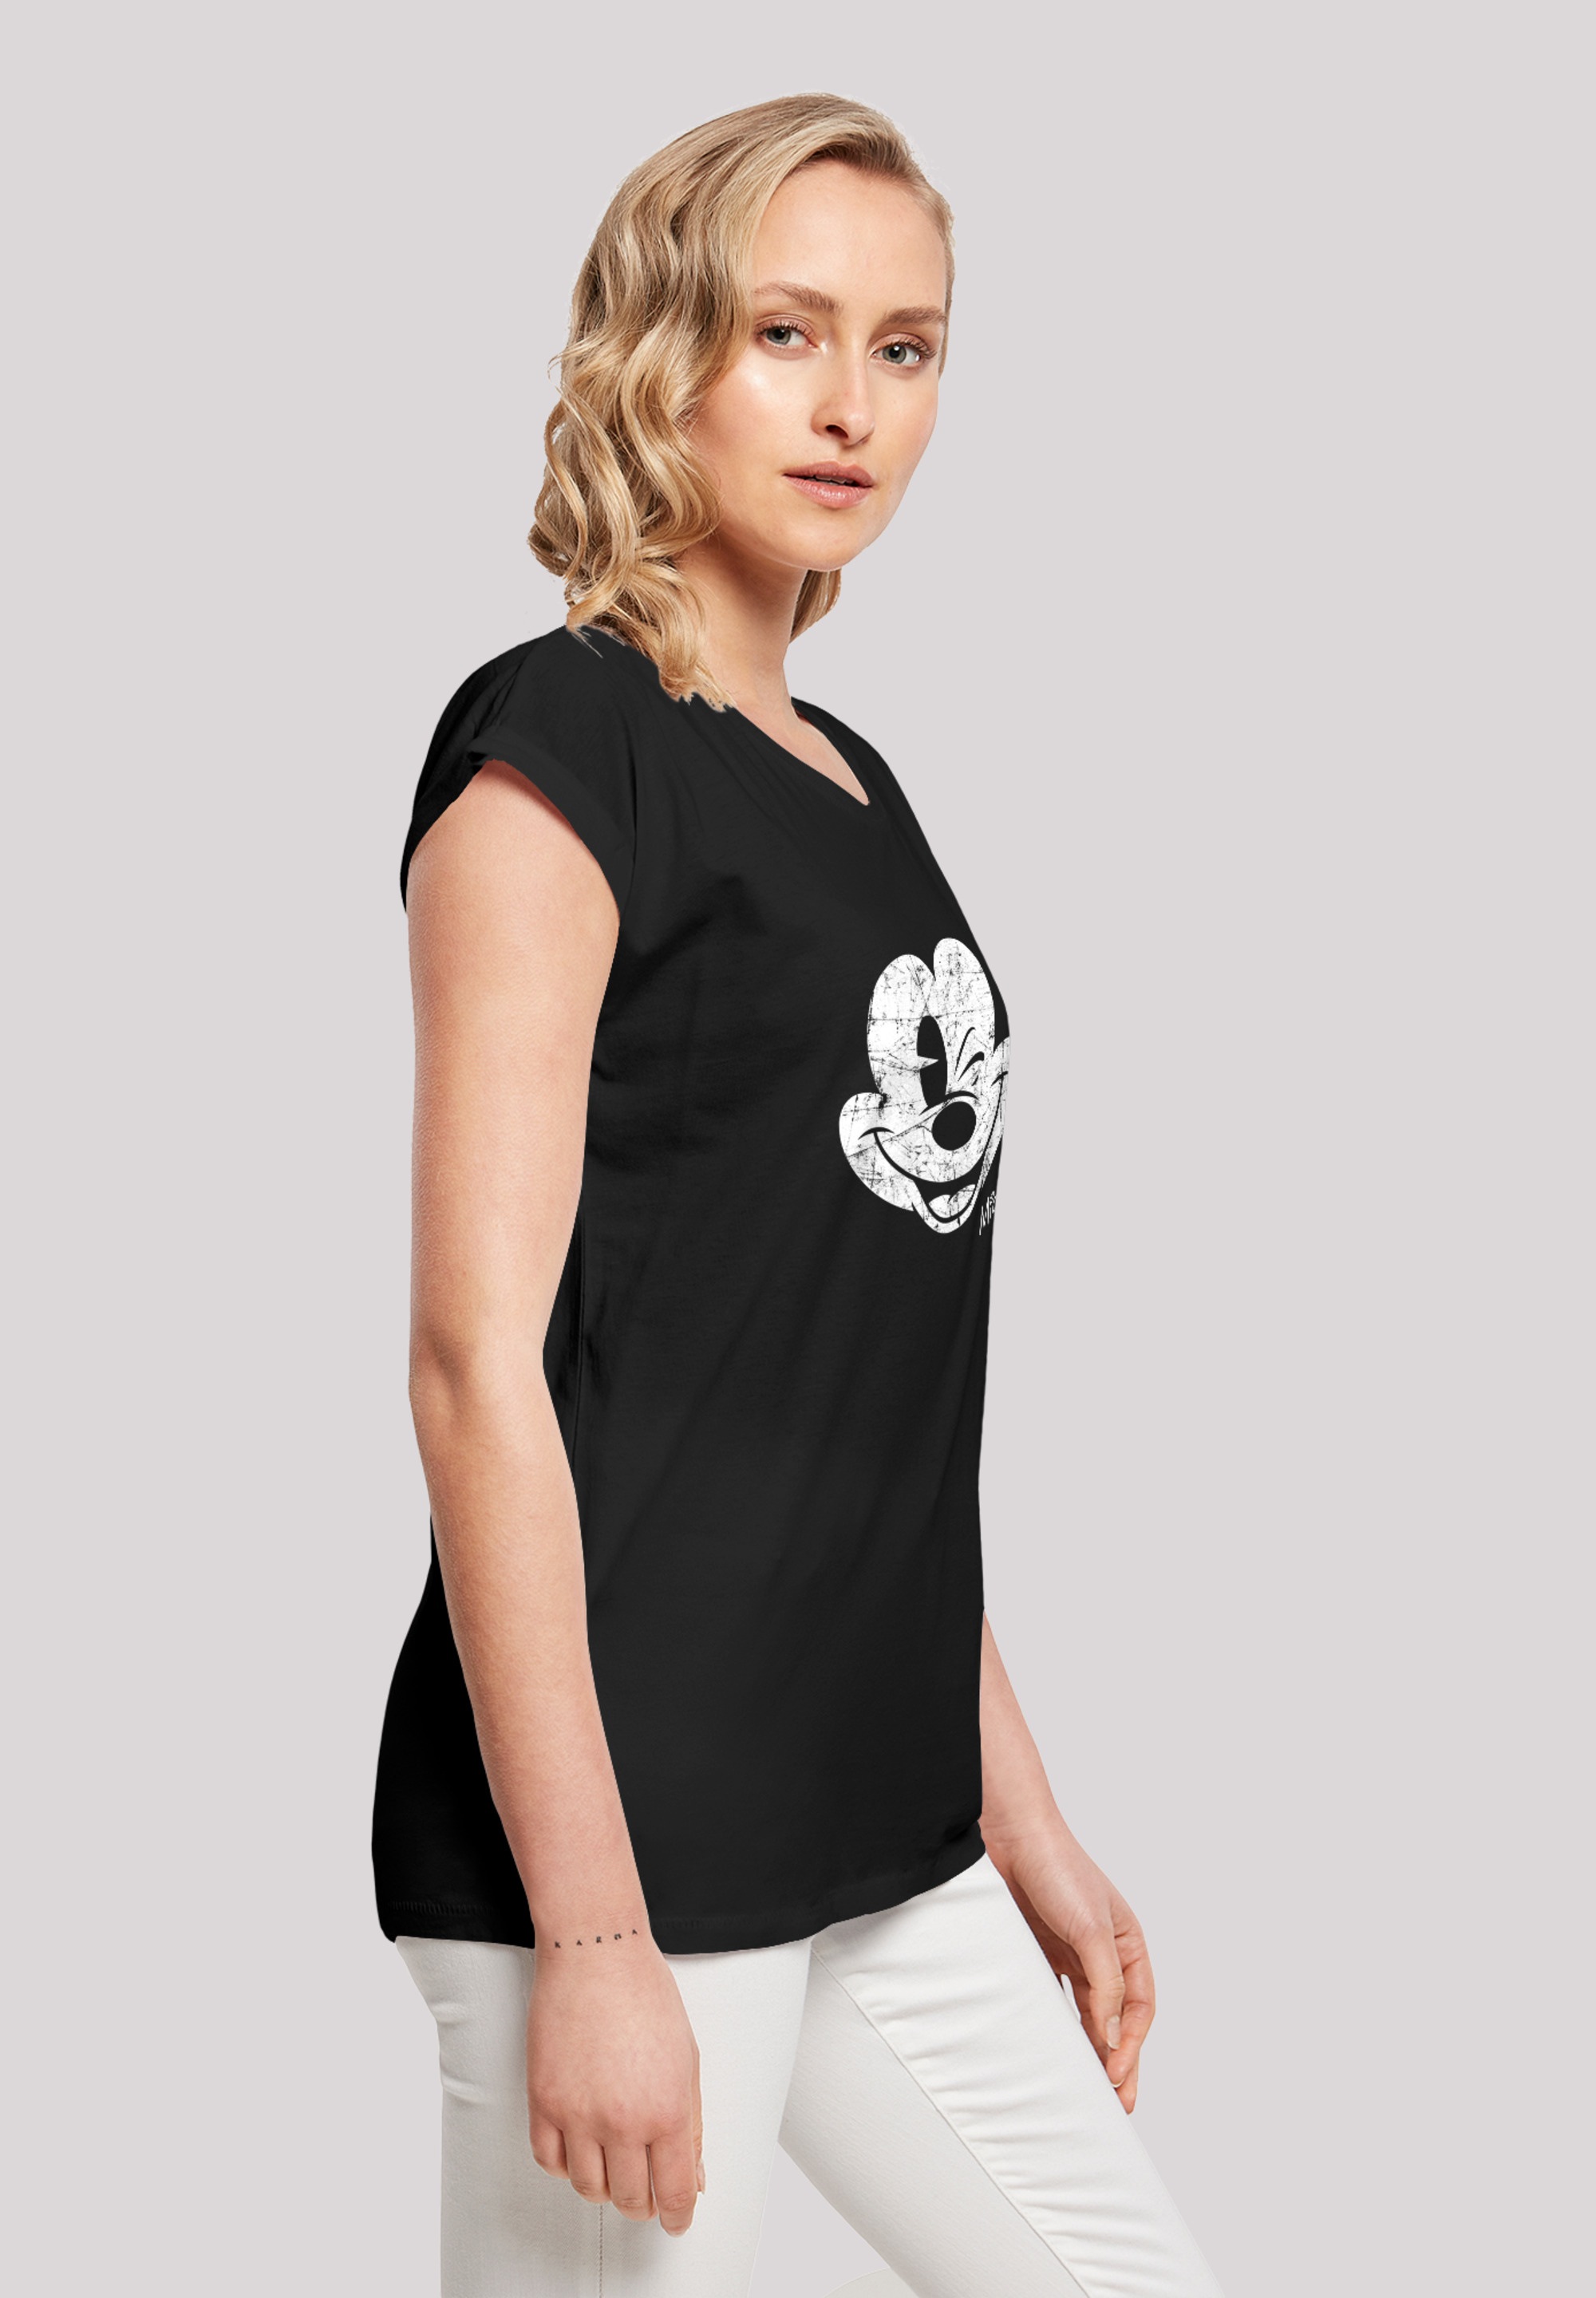 F4NT4STIC T-Shirt Damen,Premium Ärmel,Bedruckt Merch,Regular-Fit,Kurze »Disney Micky Maus shoppen Gesicht«